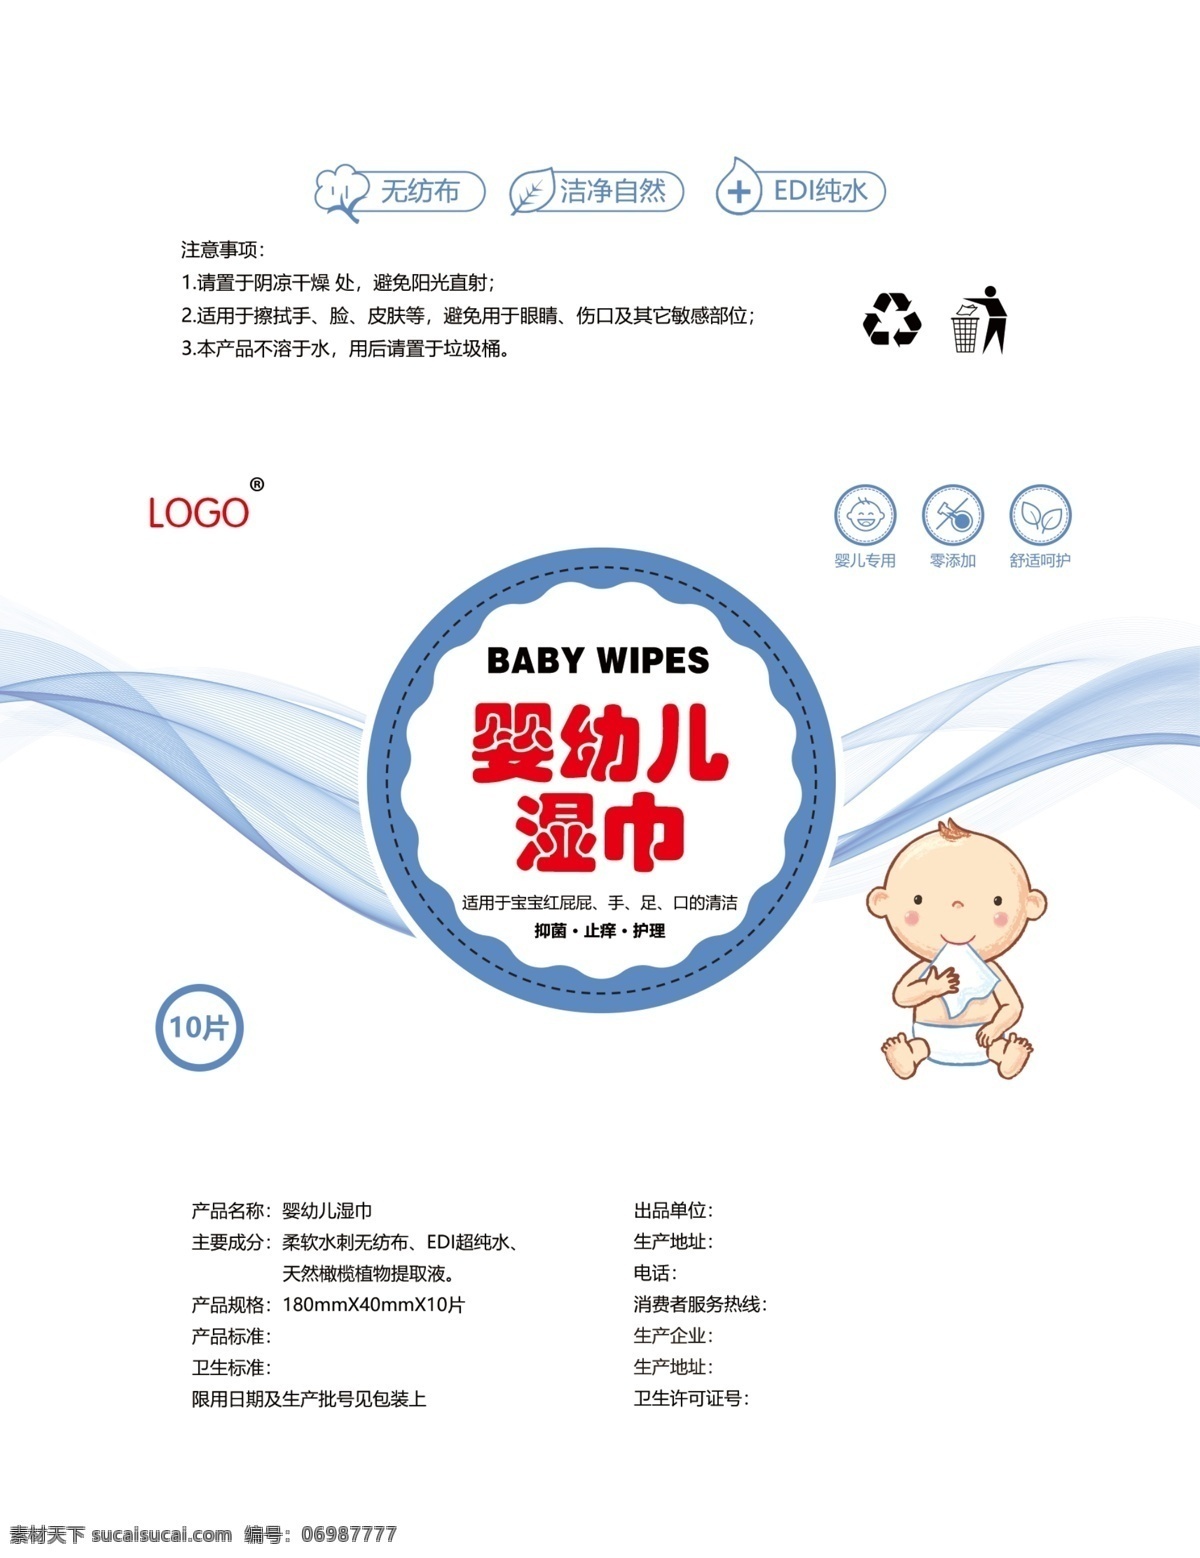 婴幼儿湿巾 婴儿湿巾 婴儿包装 婴儿用品 湿巾包装 儿童包装 包装设计